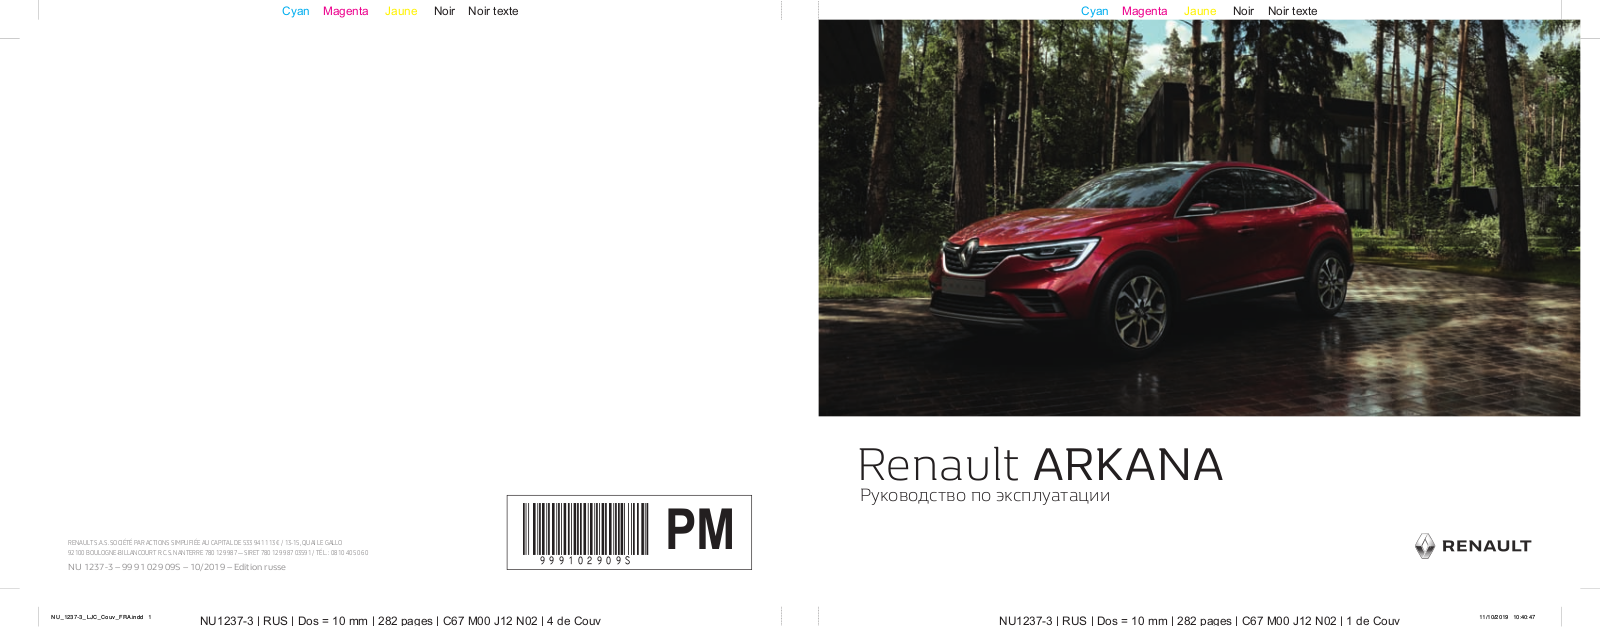 Renault Arkana 2019 User Manual